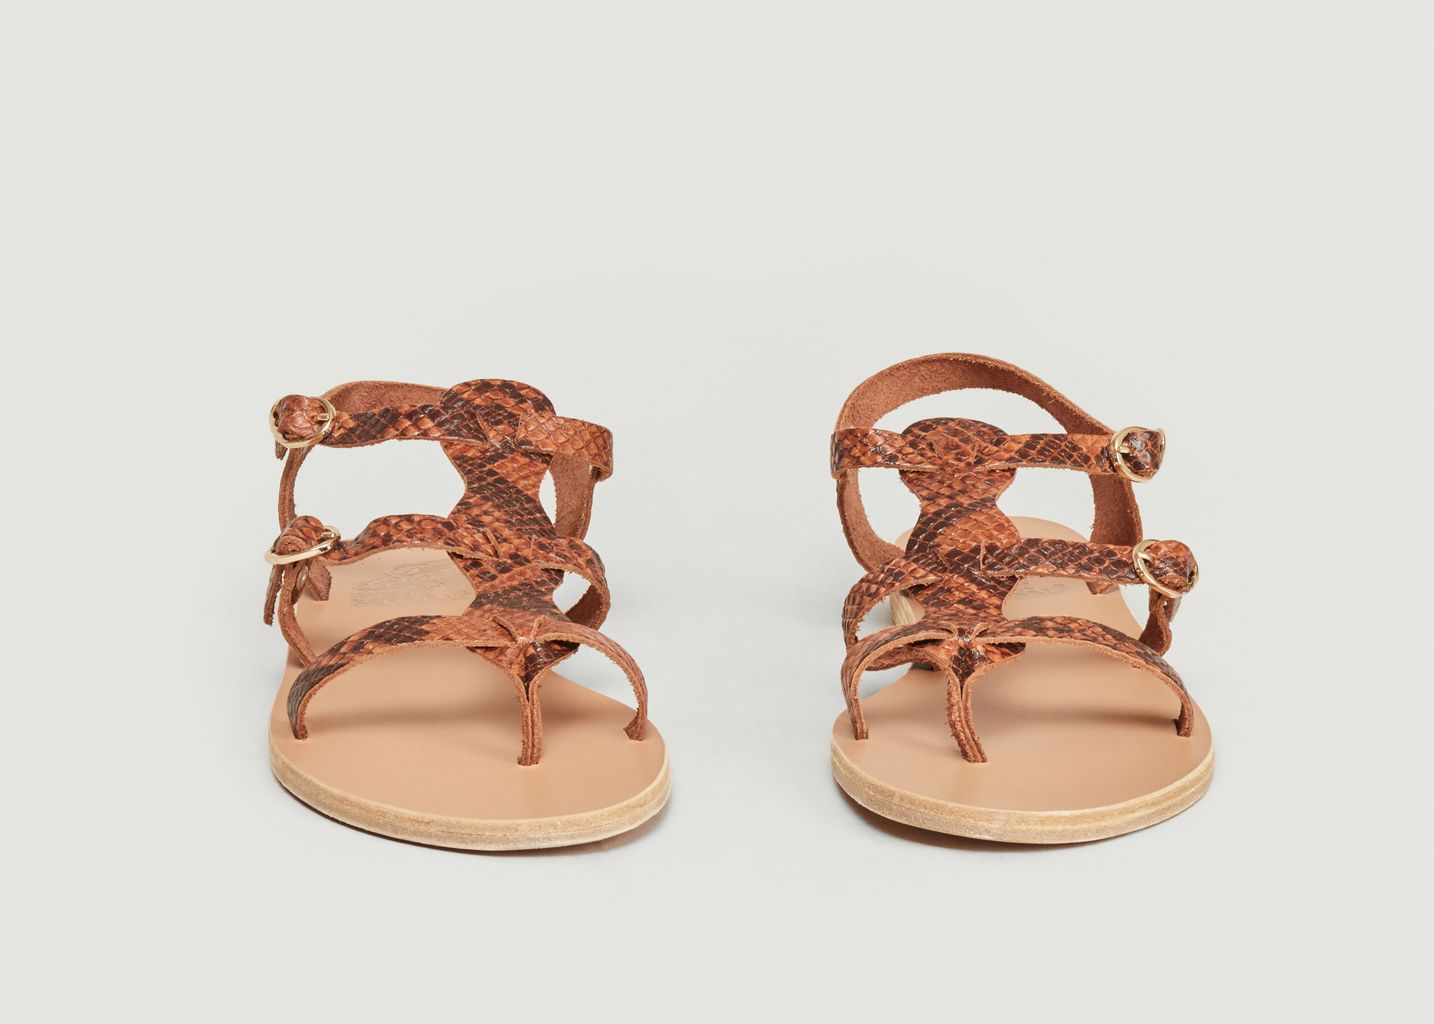 Sandales Grace Kelly Cuir Ancient Greek Sandals en coloris Rose Femme Chaussures plates Chaussures plates Ancient Greek Sandals 